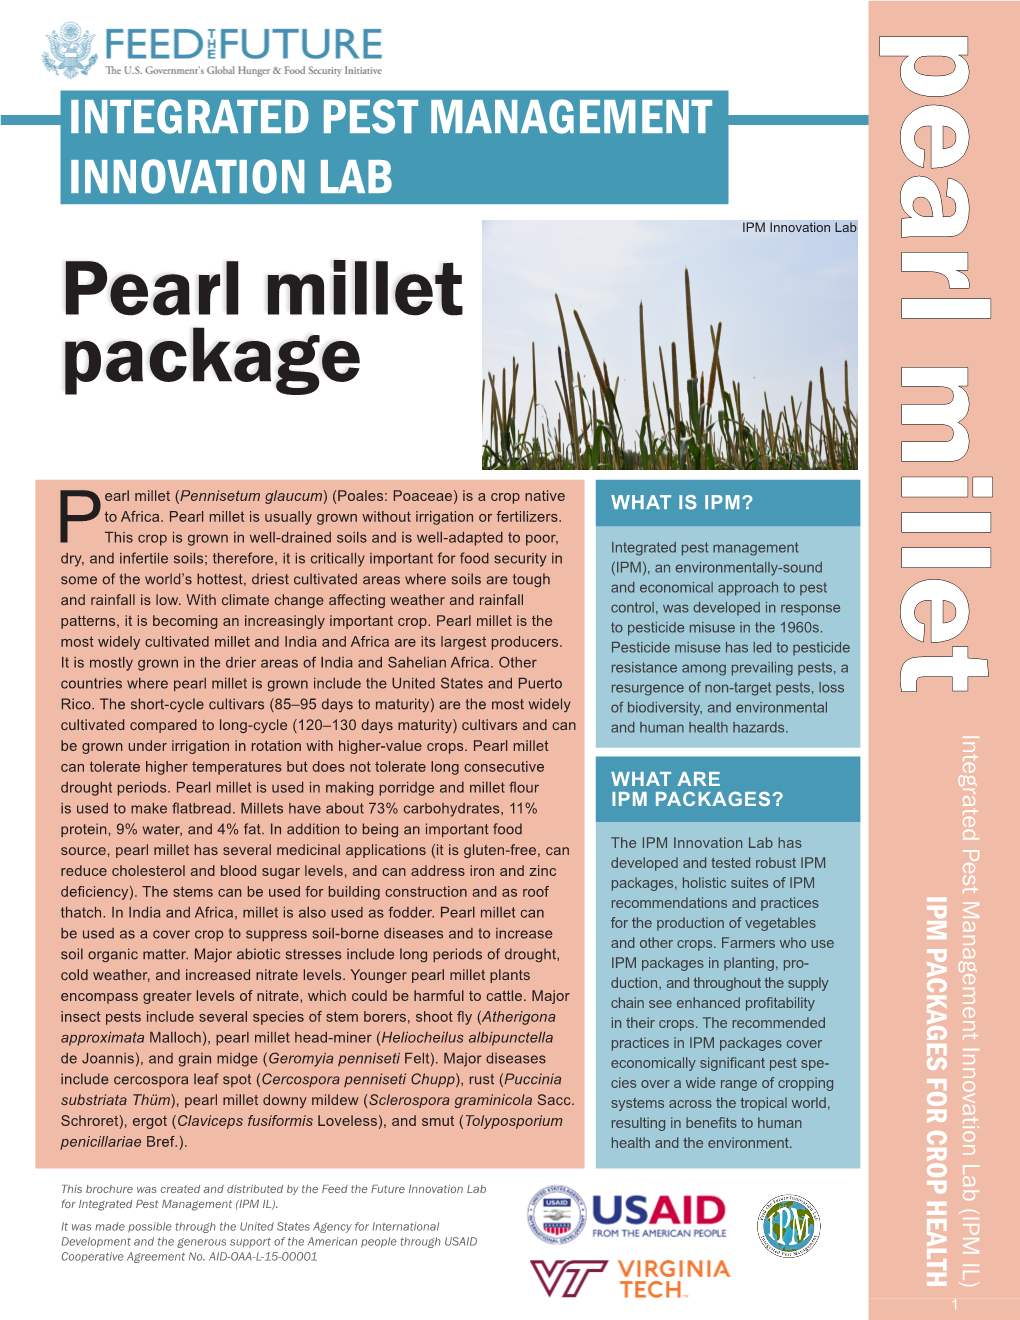 Pearl Millet Package